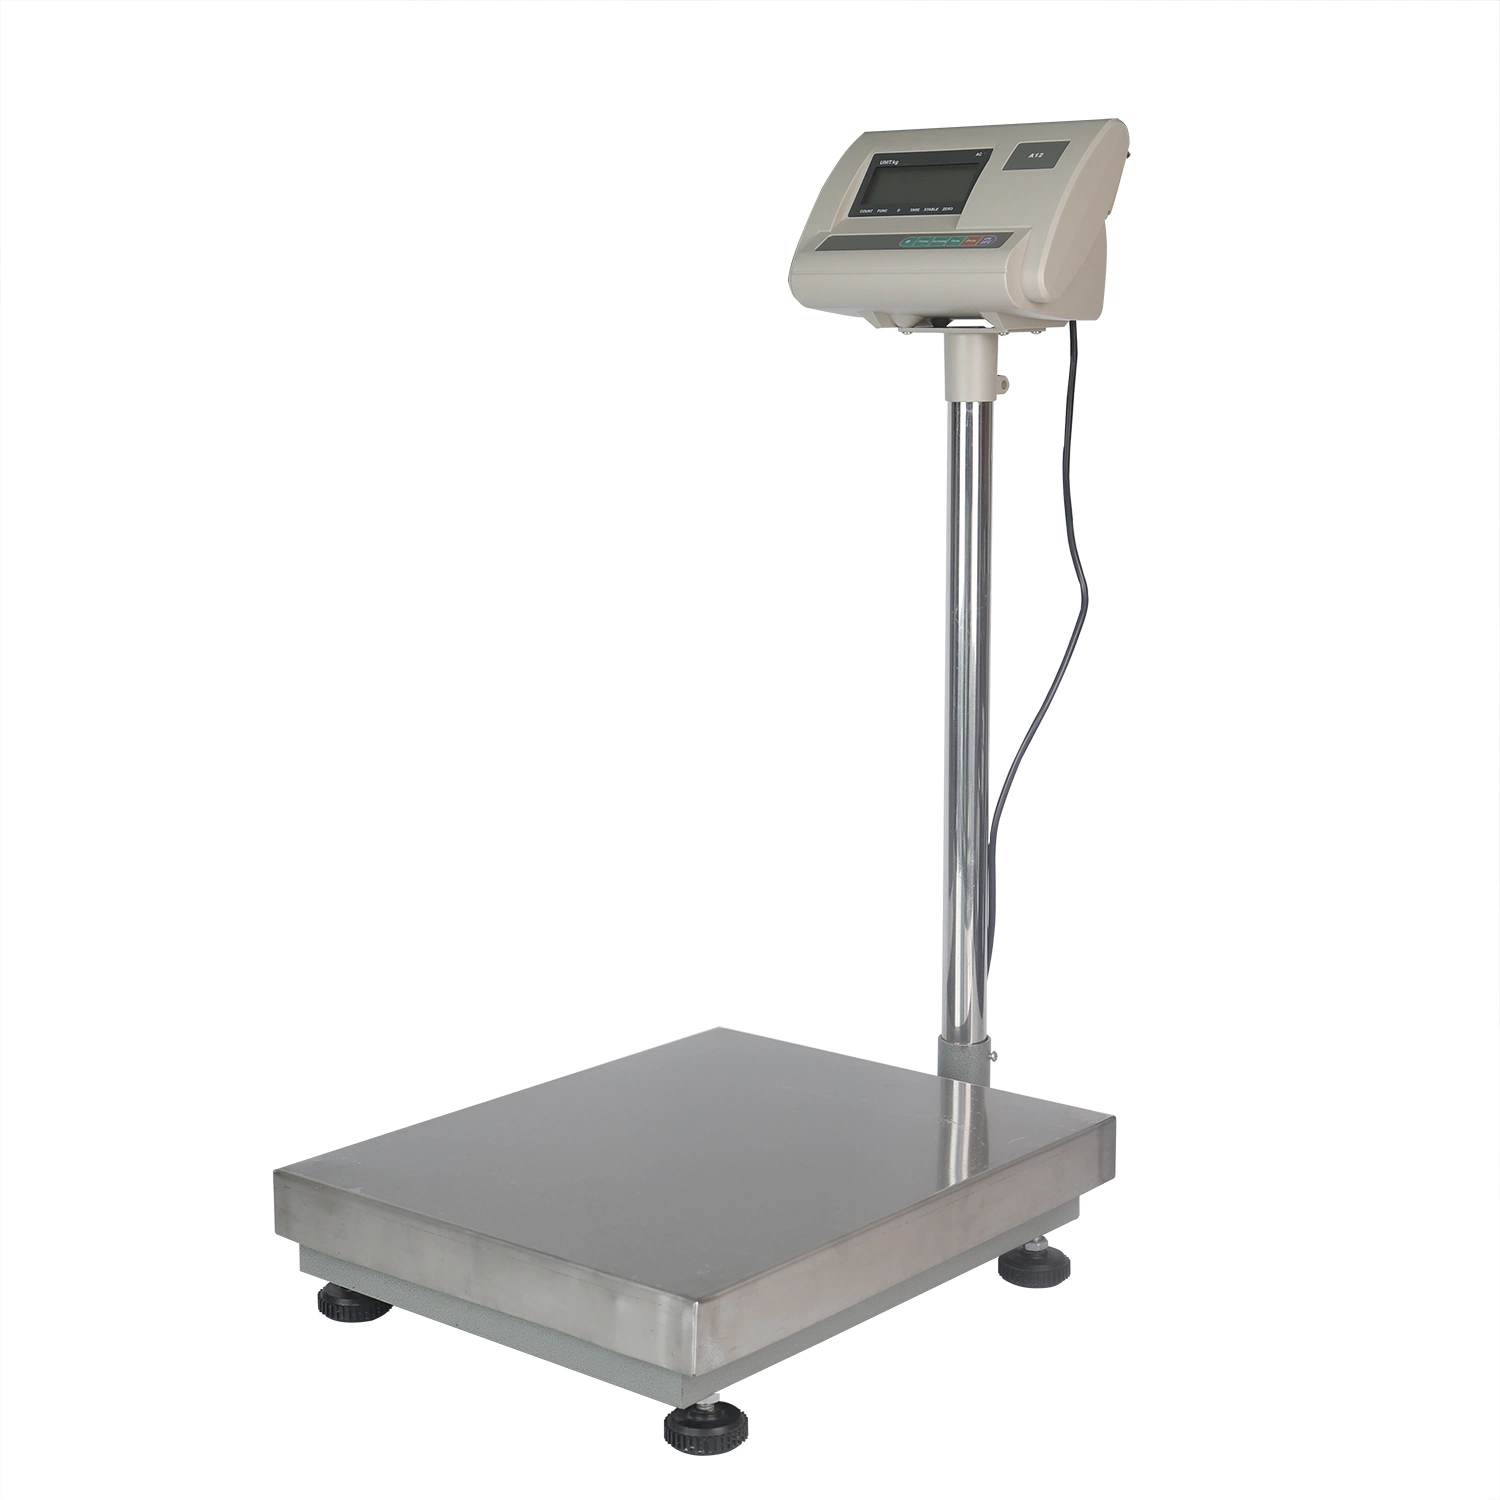 Plateforme numérique électronique de balances de pesage 40X50cm 200kg.